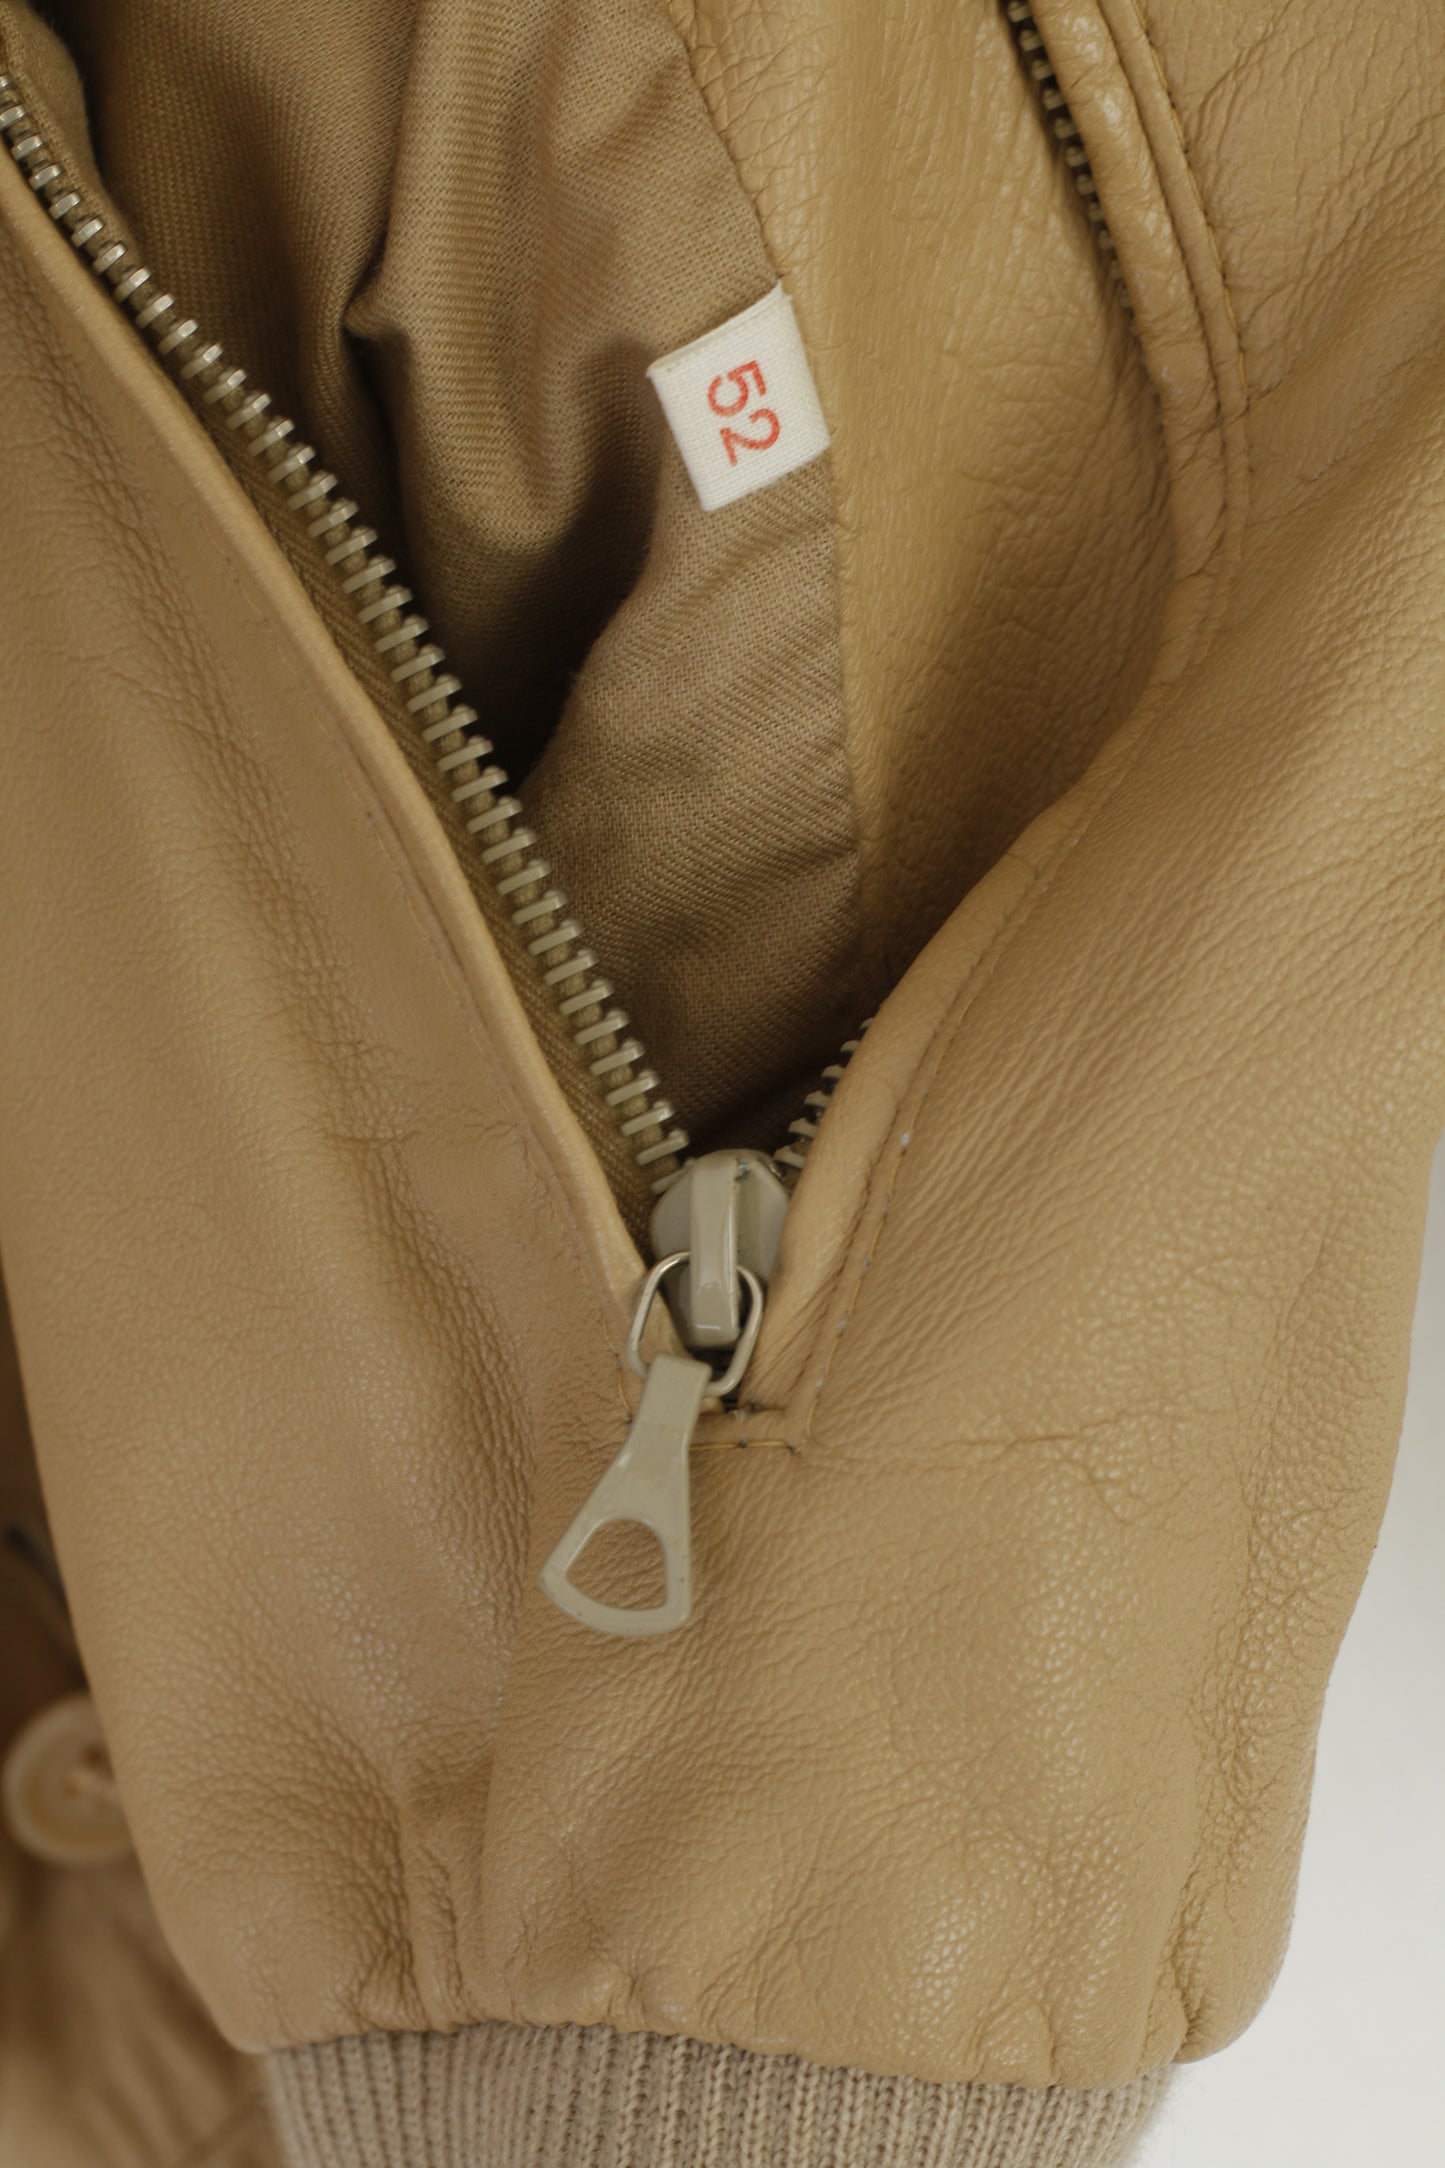 Vintage Men 52 M Jacket Beige Double Sided Harrington Classic Soft Top